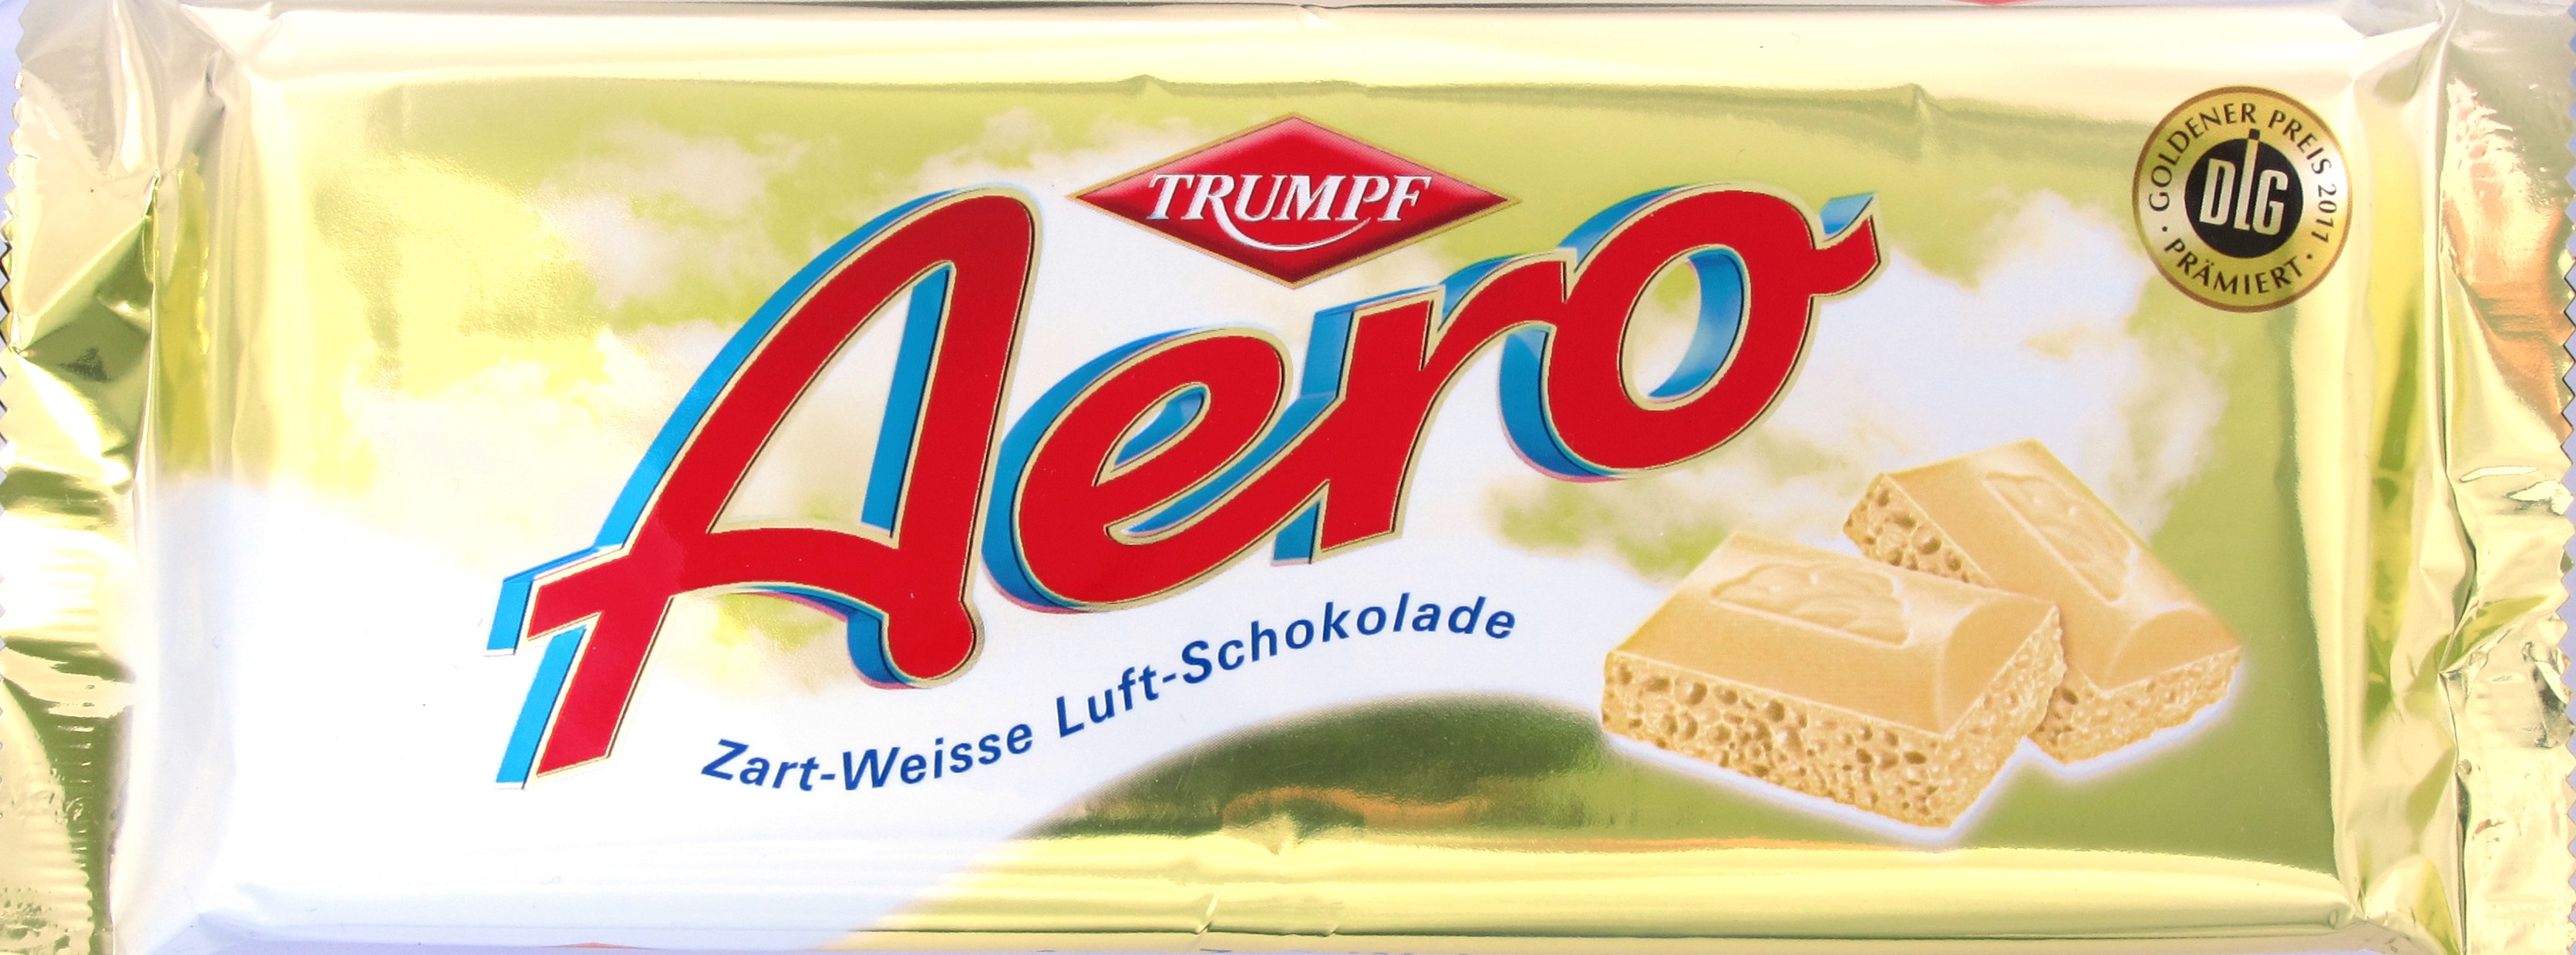 Vorderseite Aero Zart-Weisse Schokolade